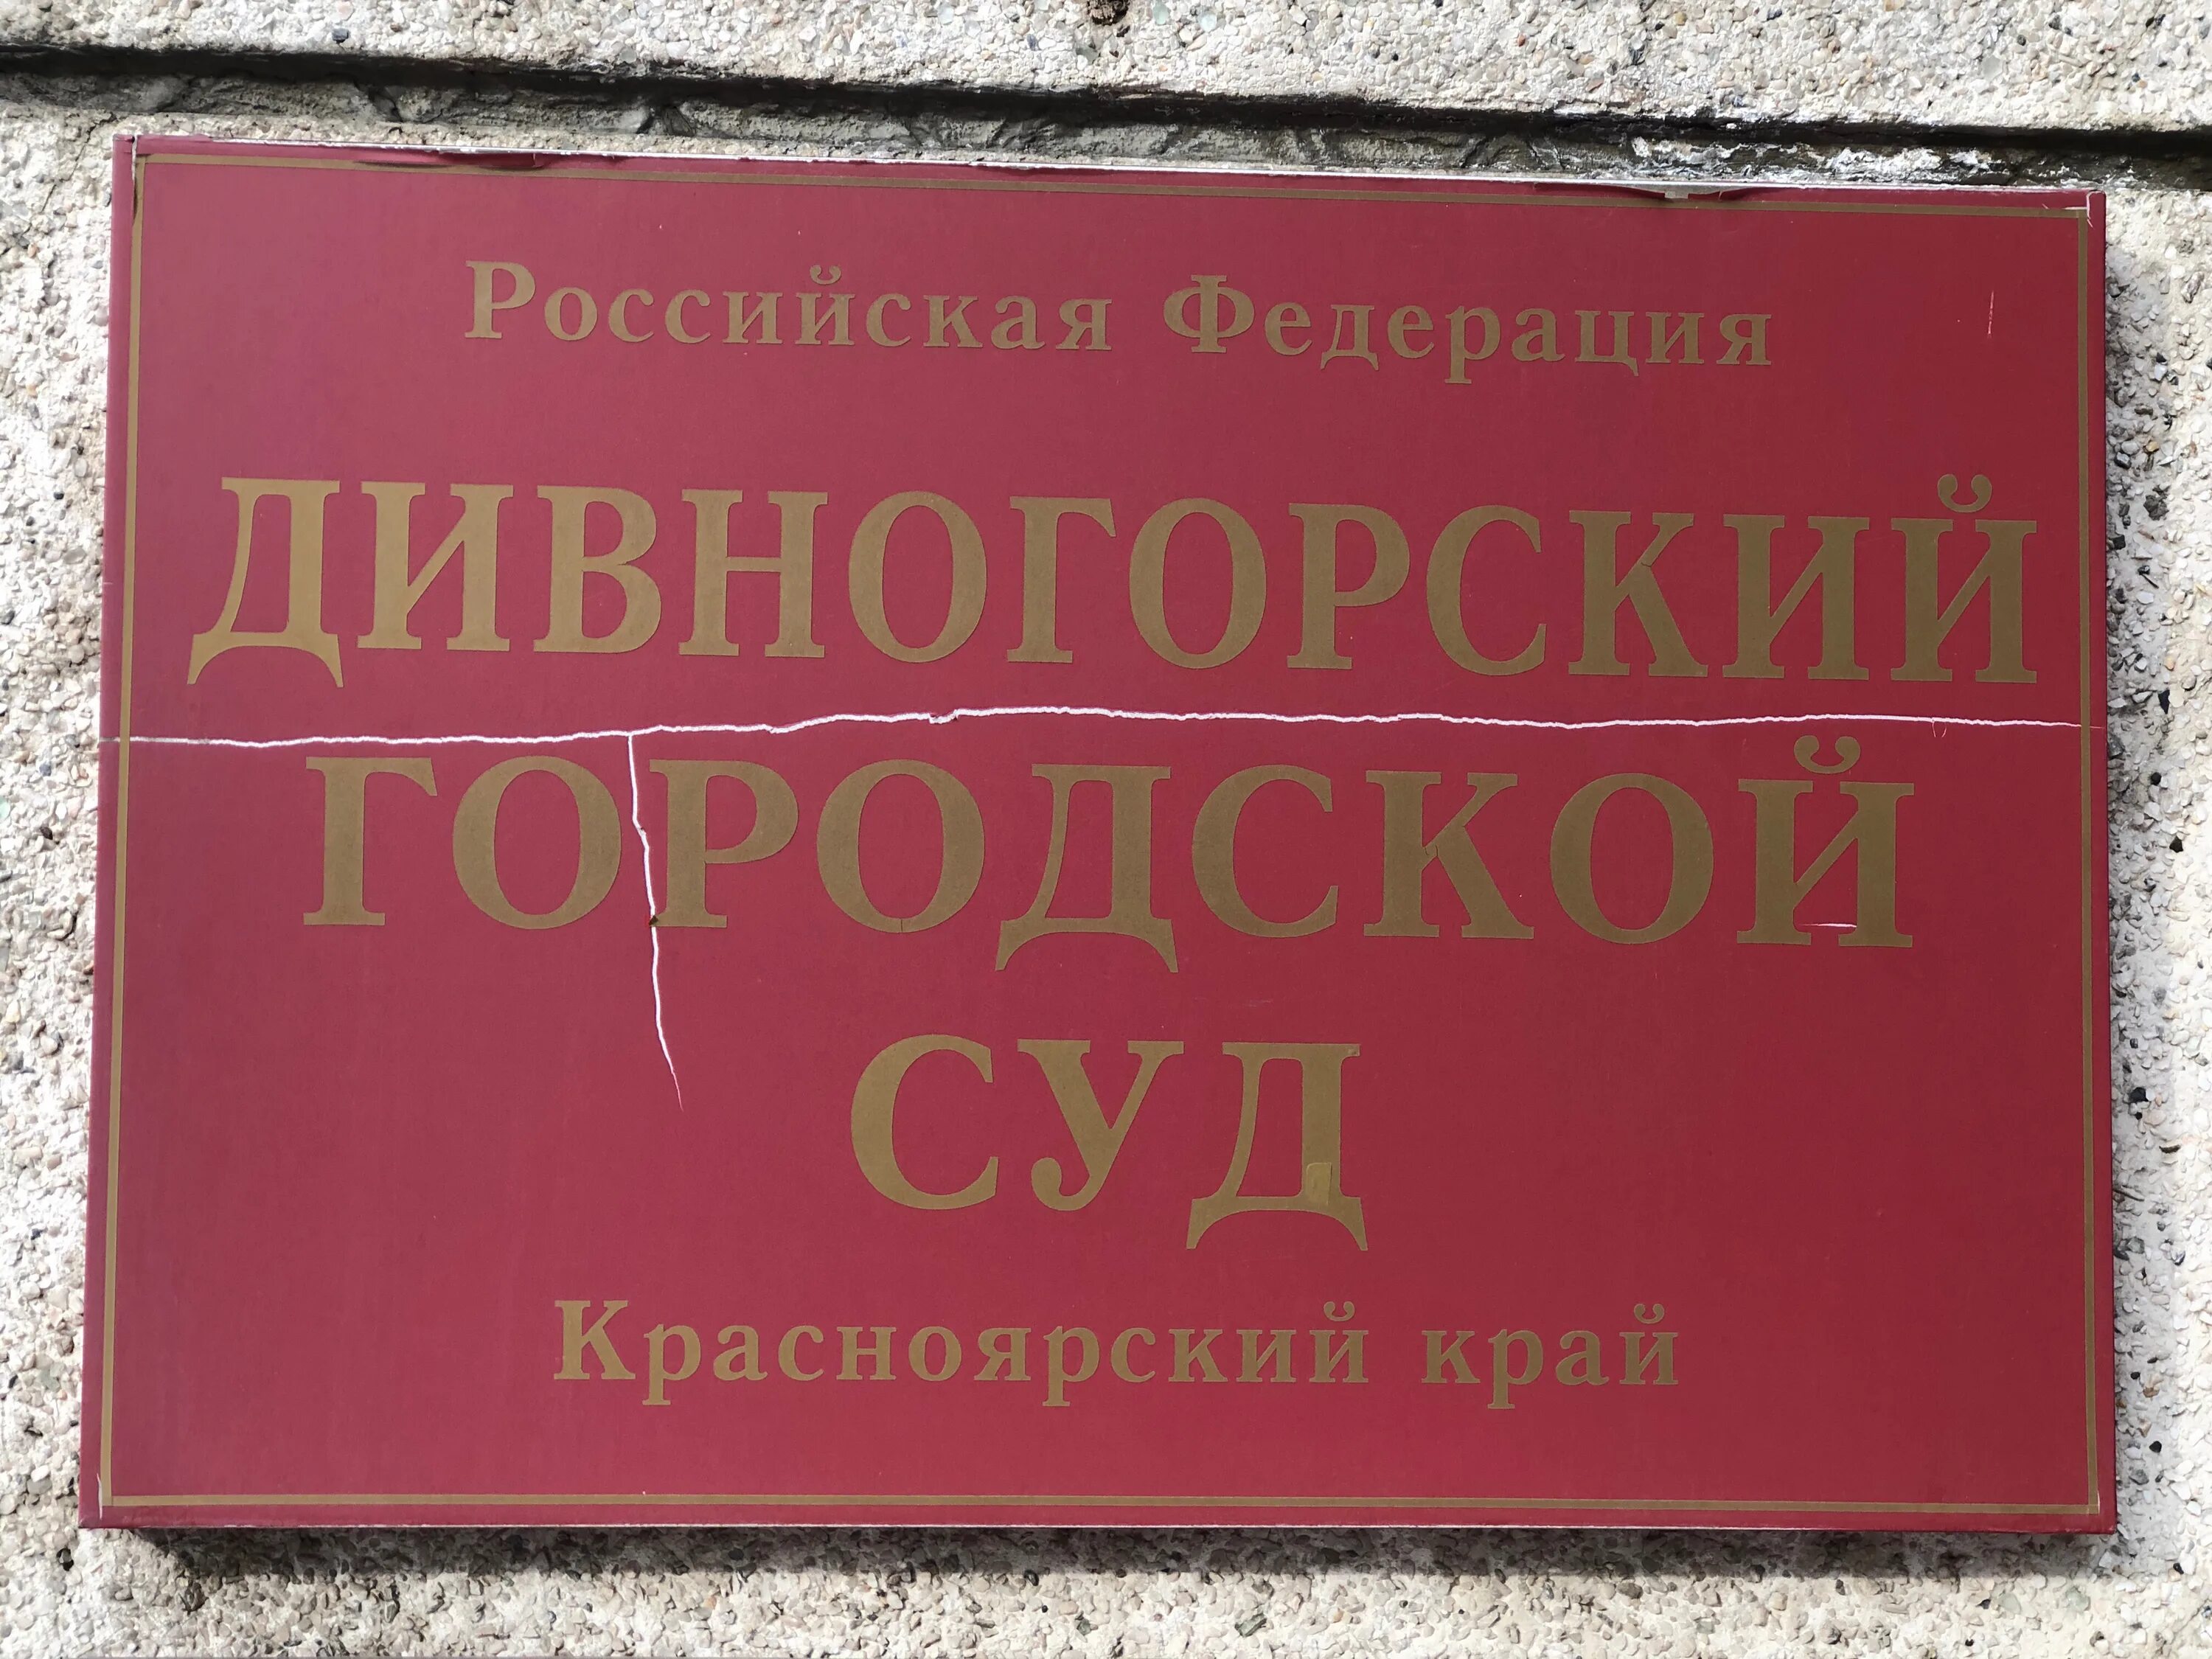 Сайт сосновоборского городского суда красноярского